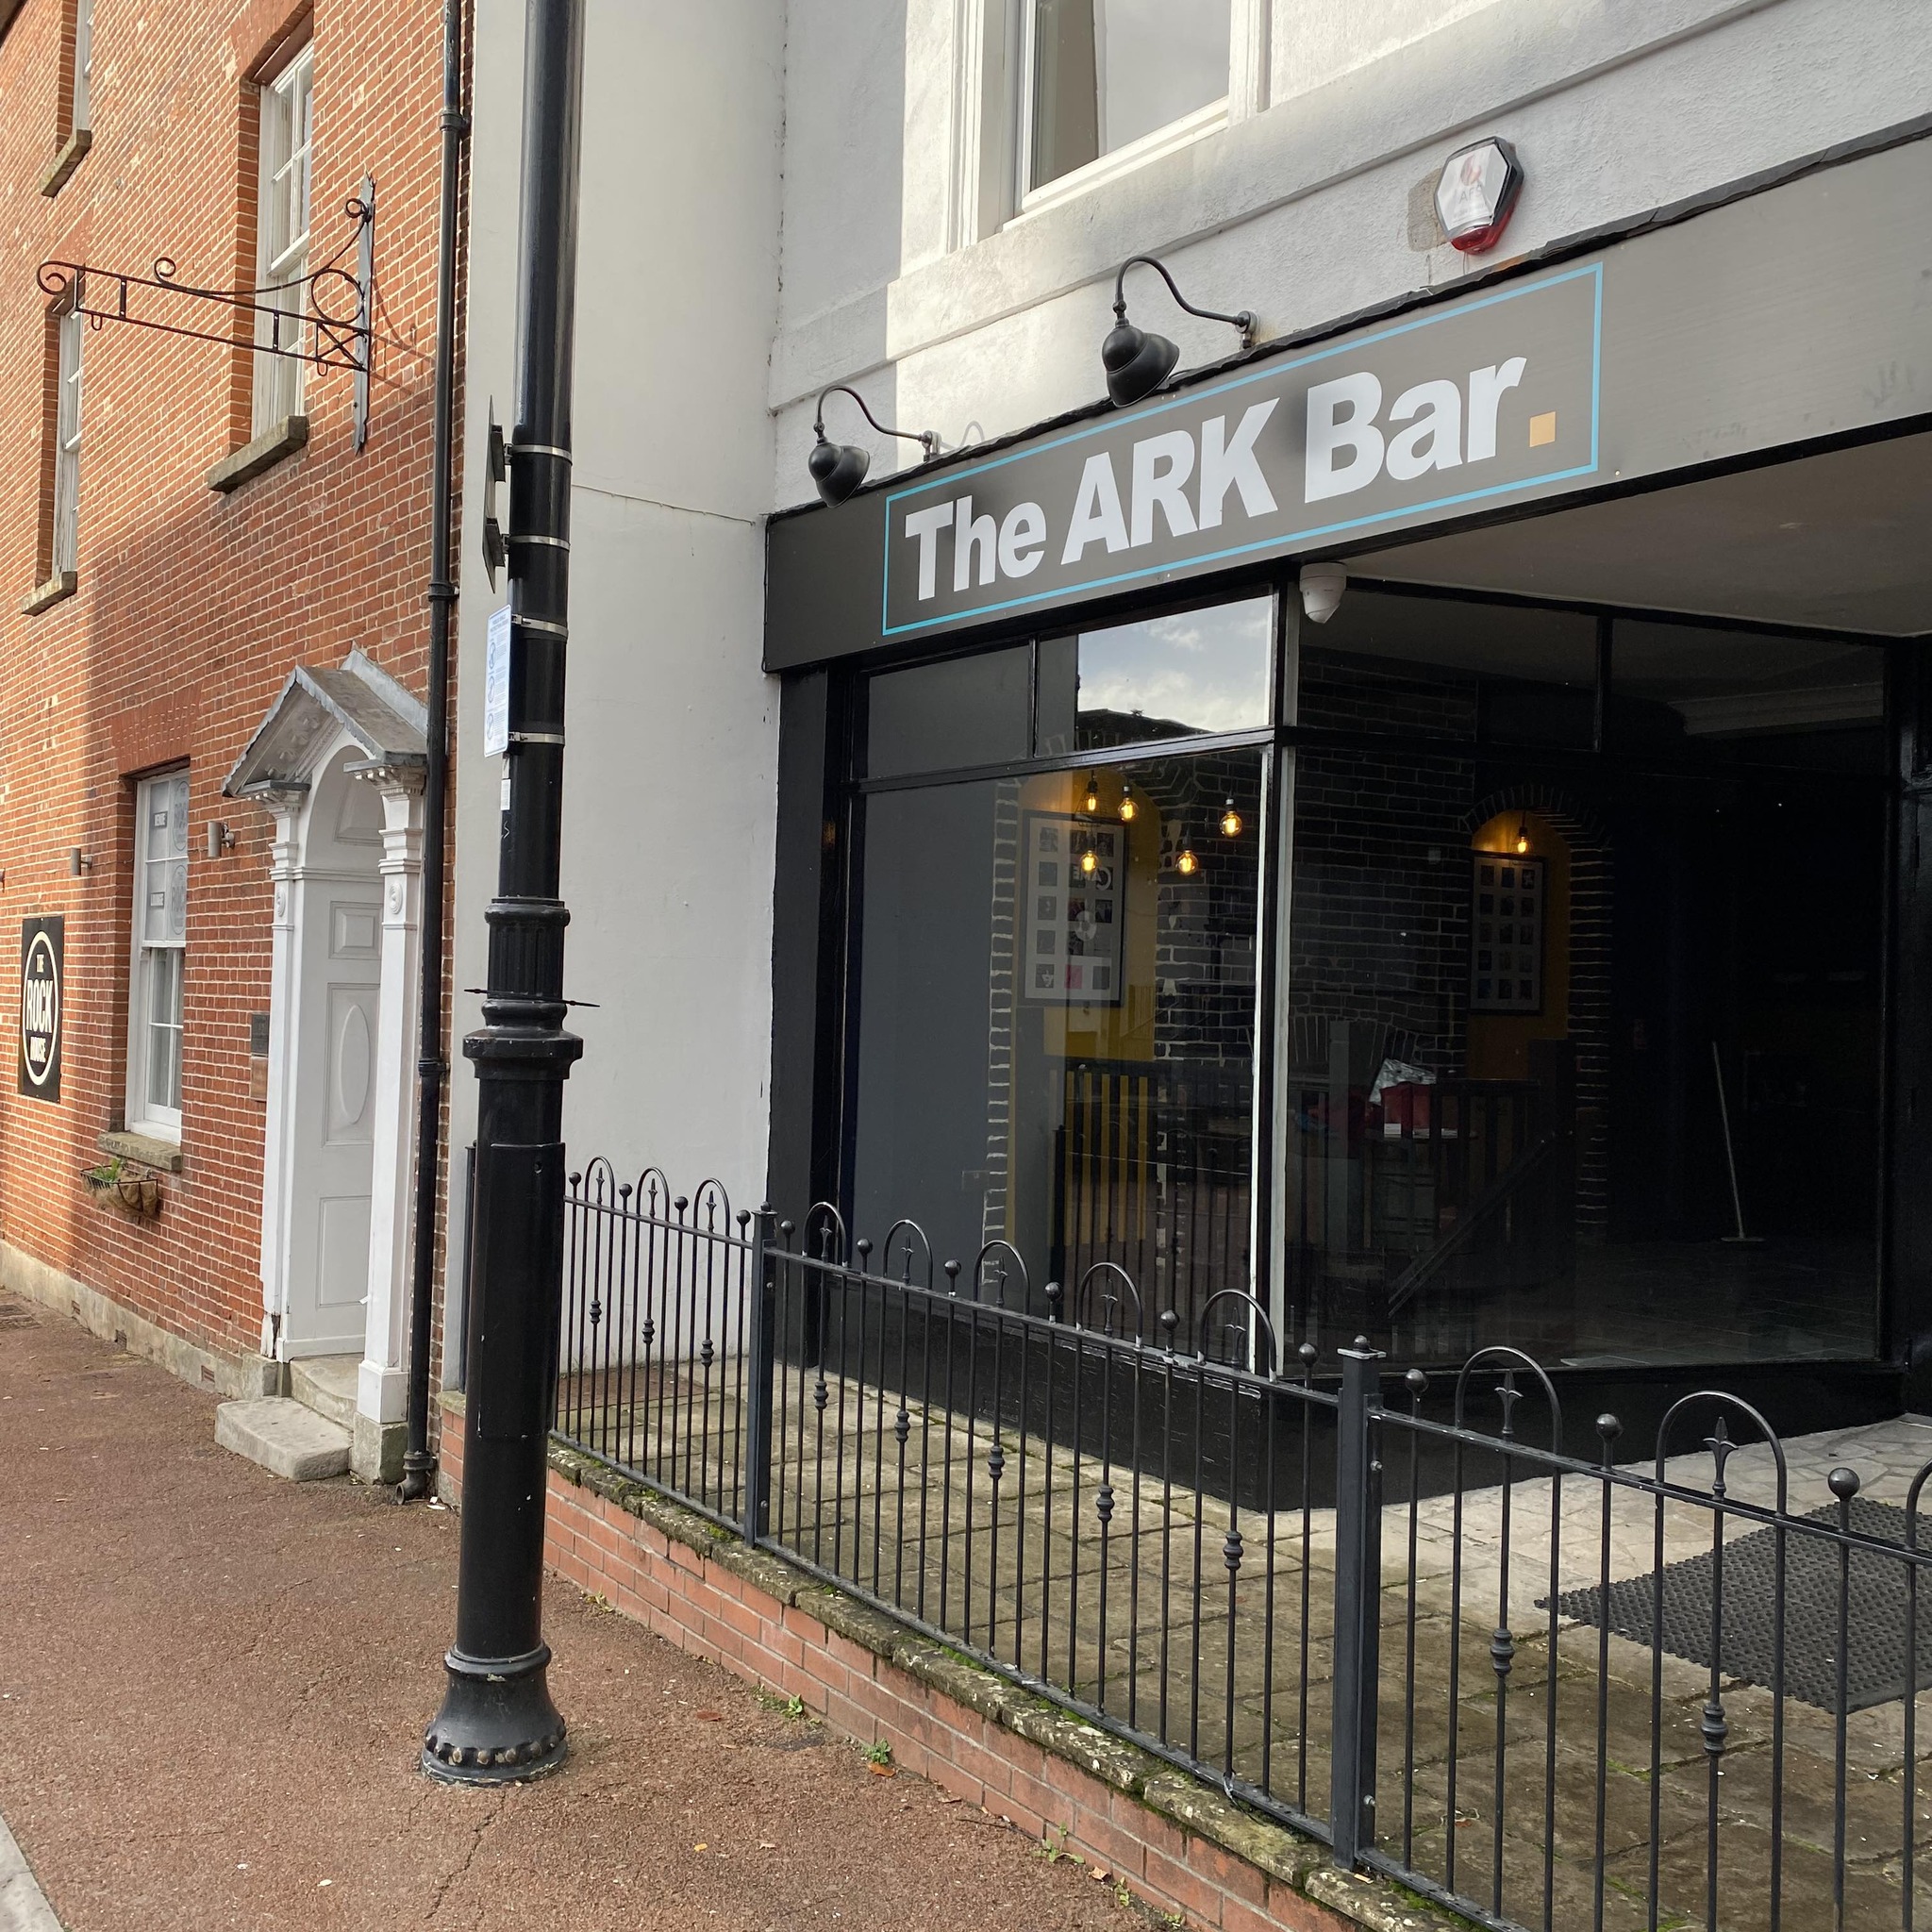 The ARK Bar